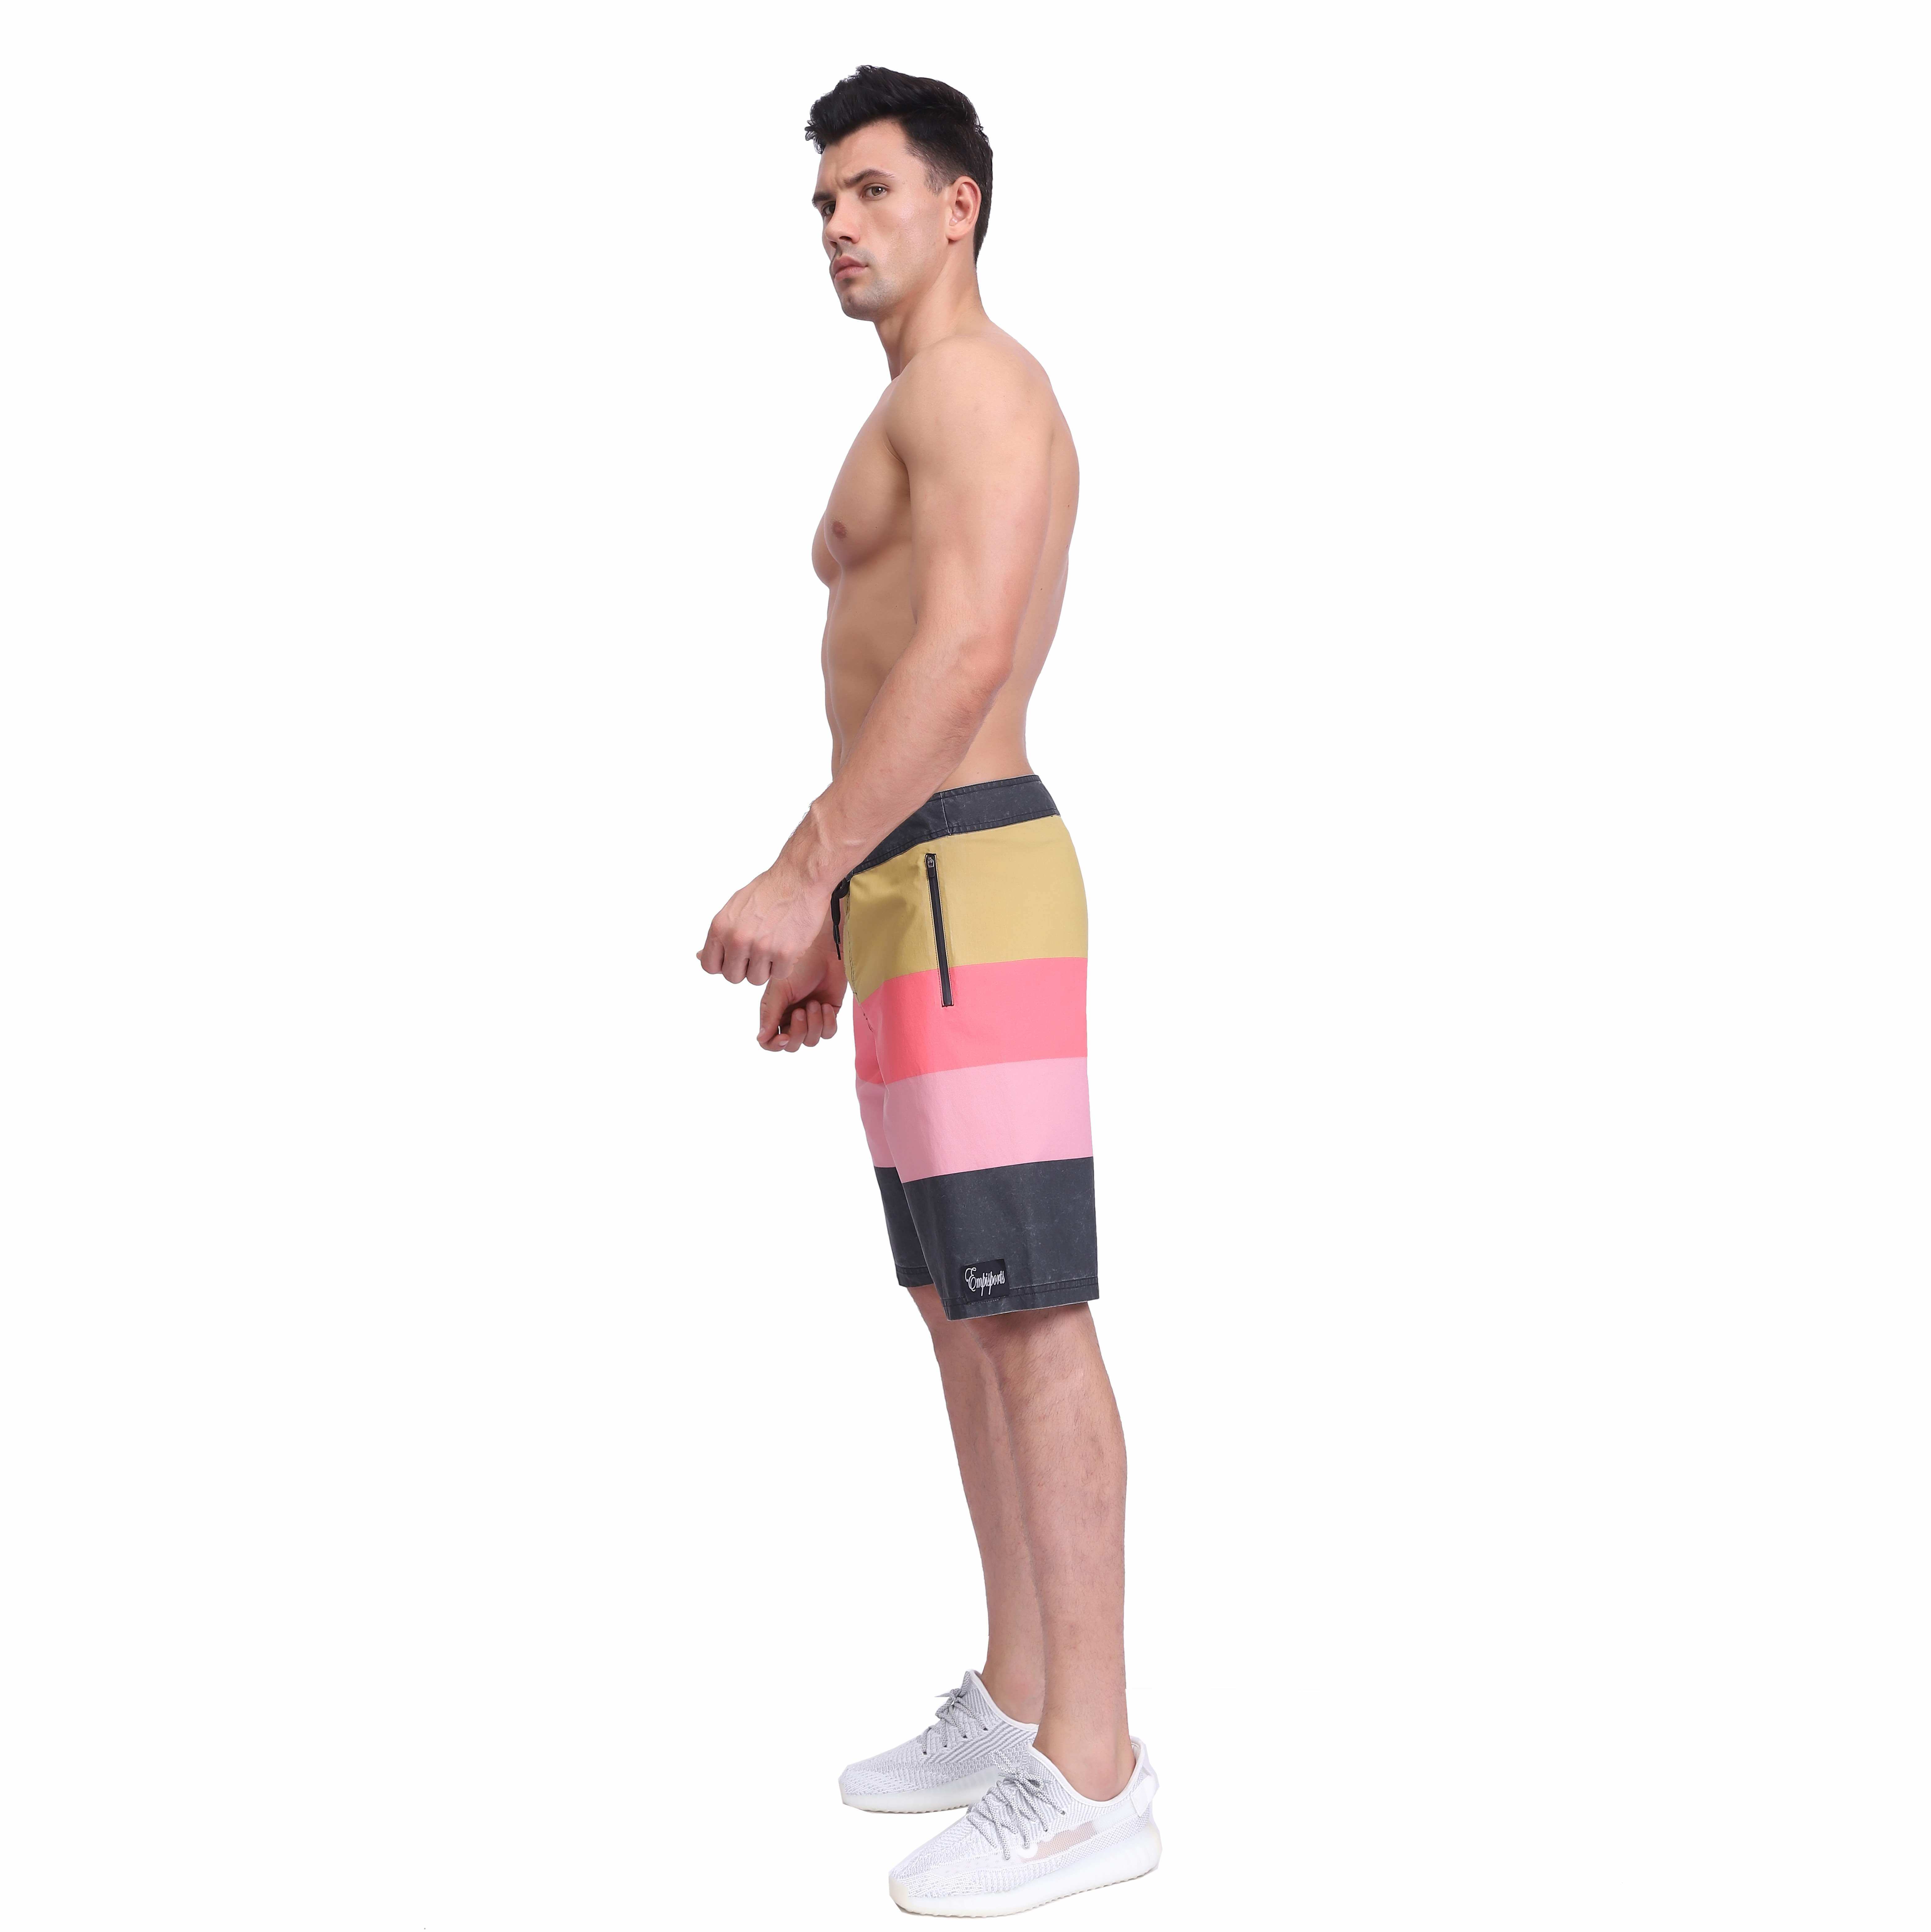 男士泳裤膝盖长度板肖特主动弹性重条纹印刷